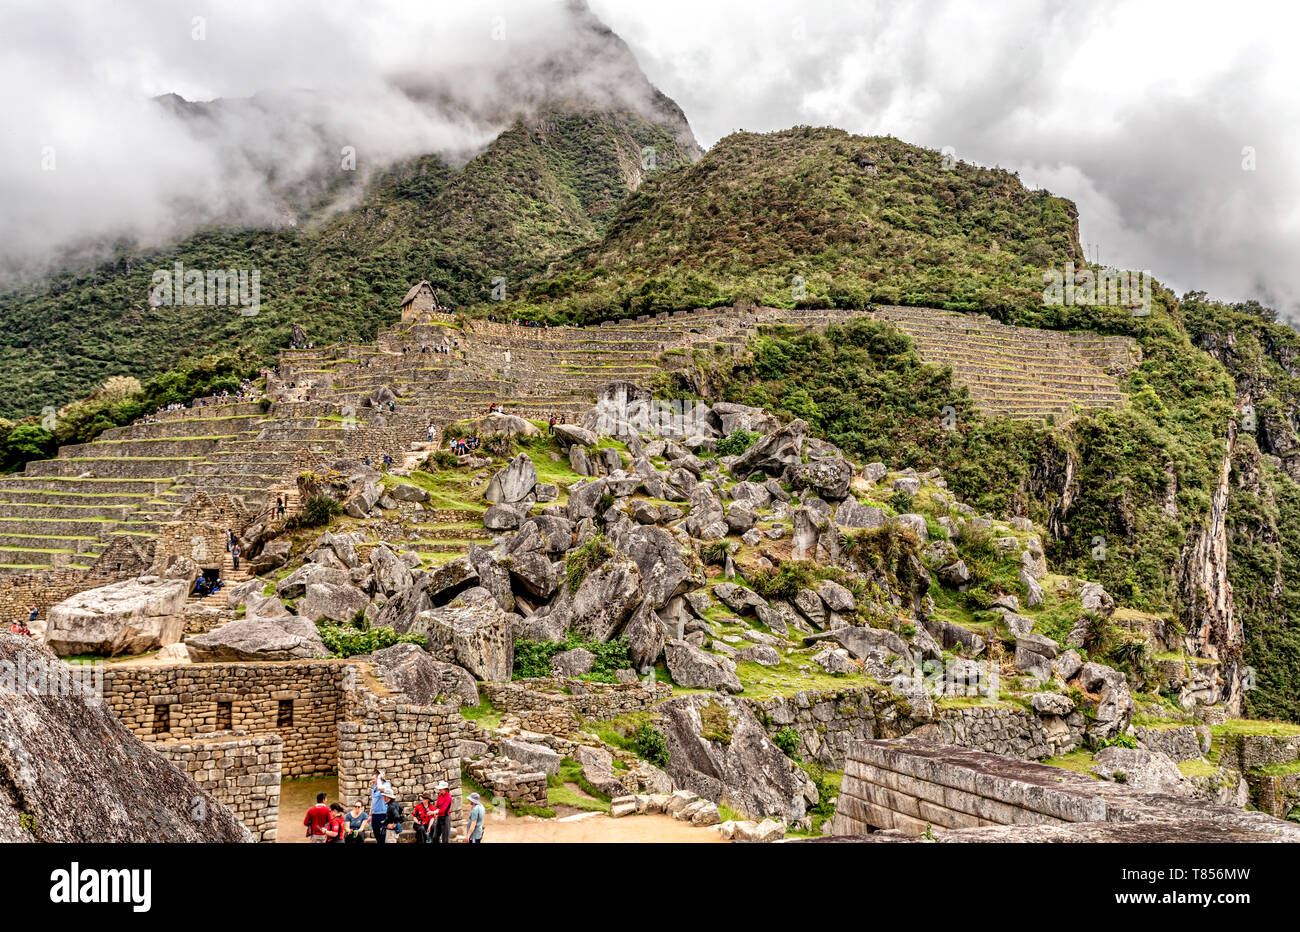 Le Machu Picchu, au Pérou, le 7 avril - 2019 : les touristes au Sacré Plaza et le chaos de granit à l'ancienne cité de Machu Picchu au Pérou Cusco situé près de l'endroit. Banque D'Images